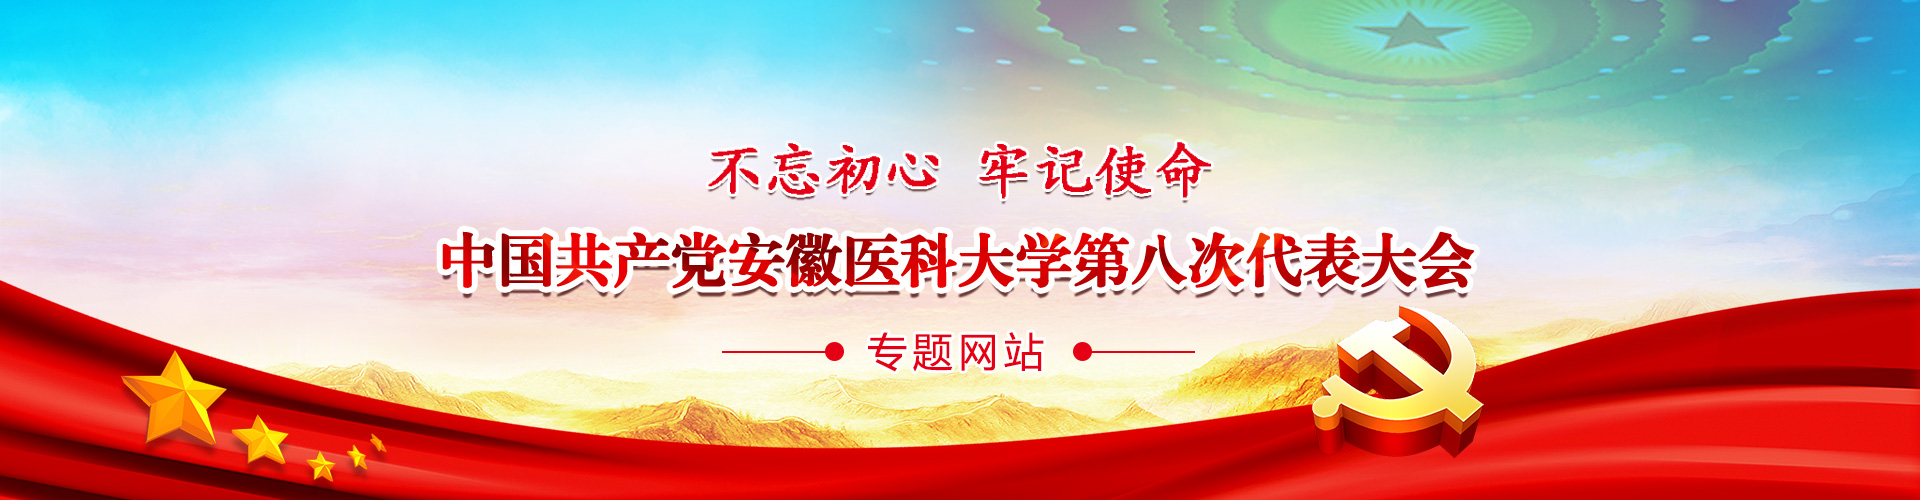 不忘初心 牢记使命,中国共产党kaiyun体育官方网站(中国)有限公司第八次代表大会